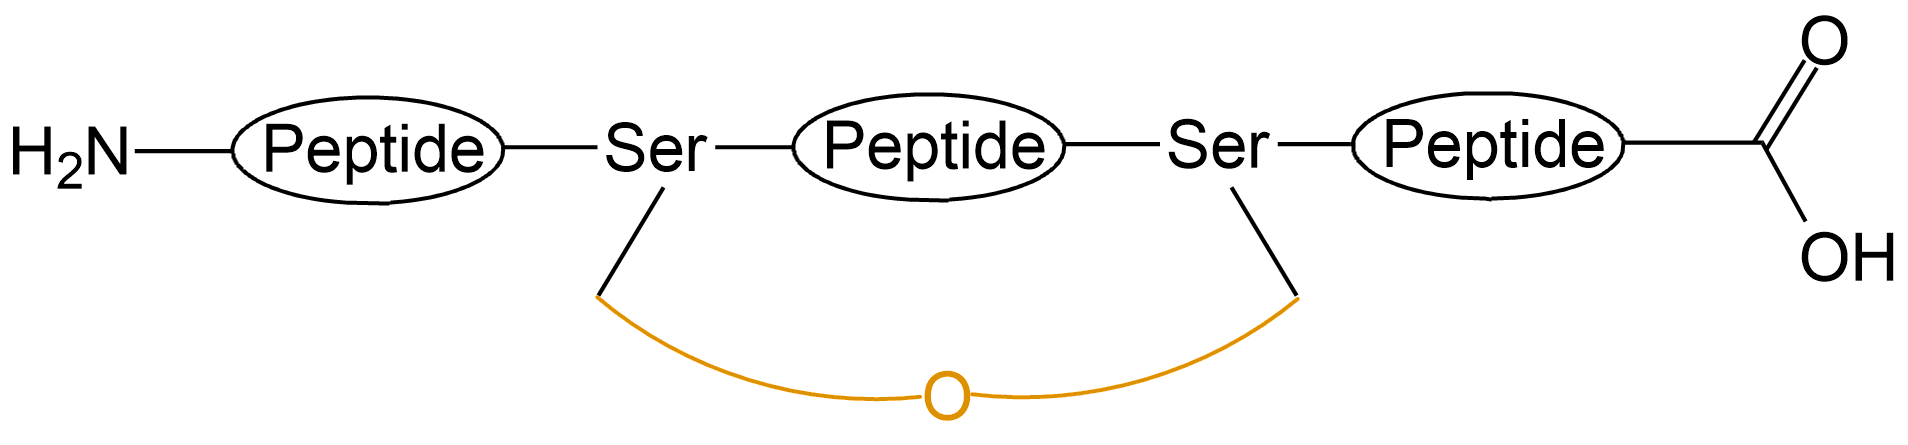 酰胺键环状多肽(专肽生物www.allpeptide.com)